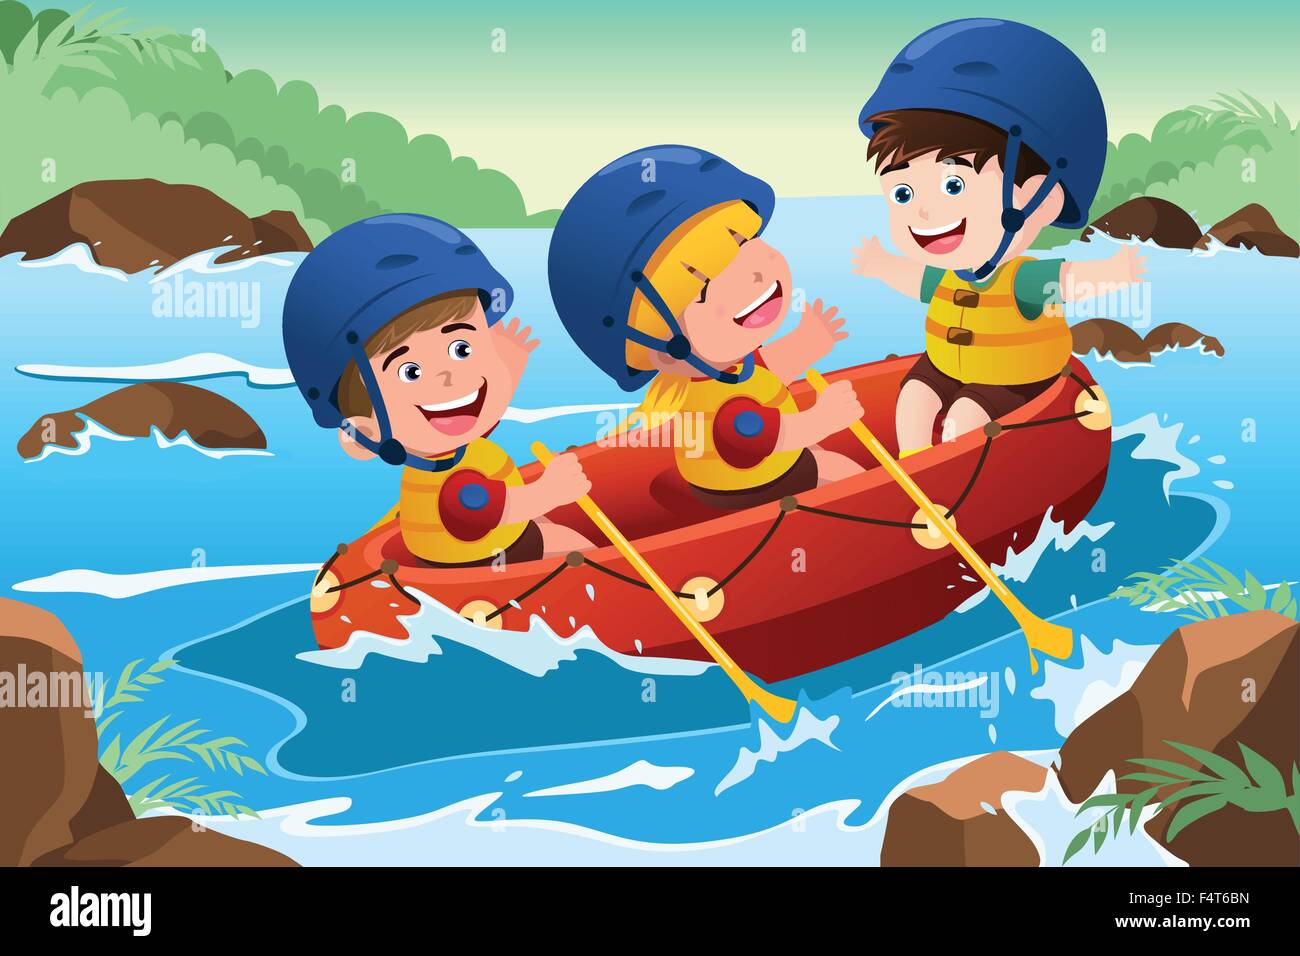 Un vecteur illustration de trois enfants heureux sur le bateau Illustration de Vecteur